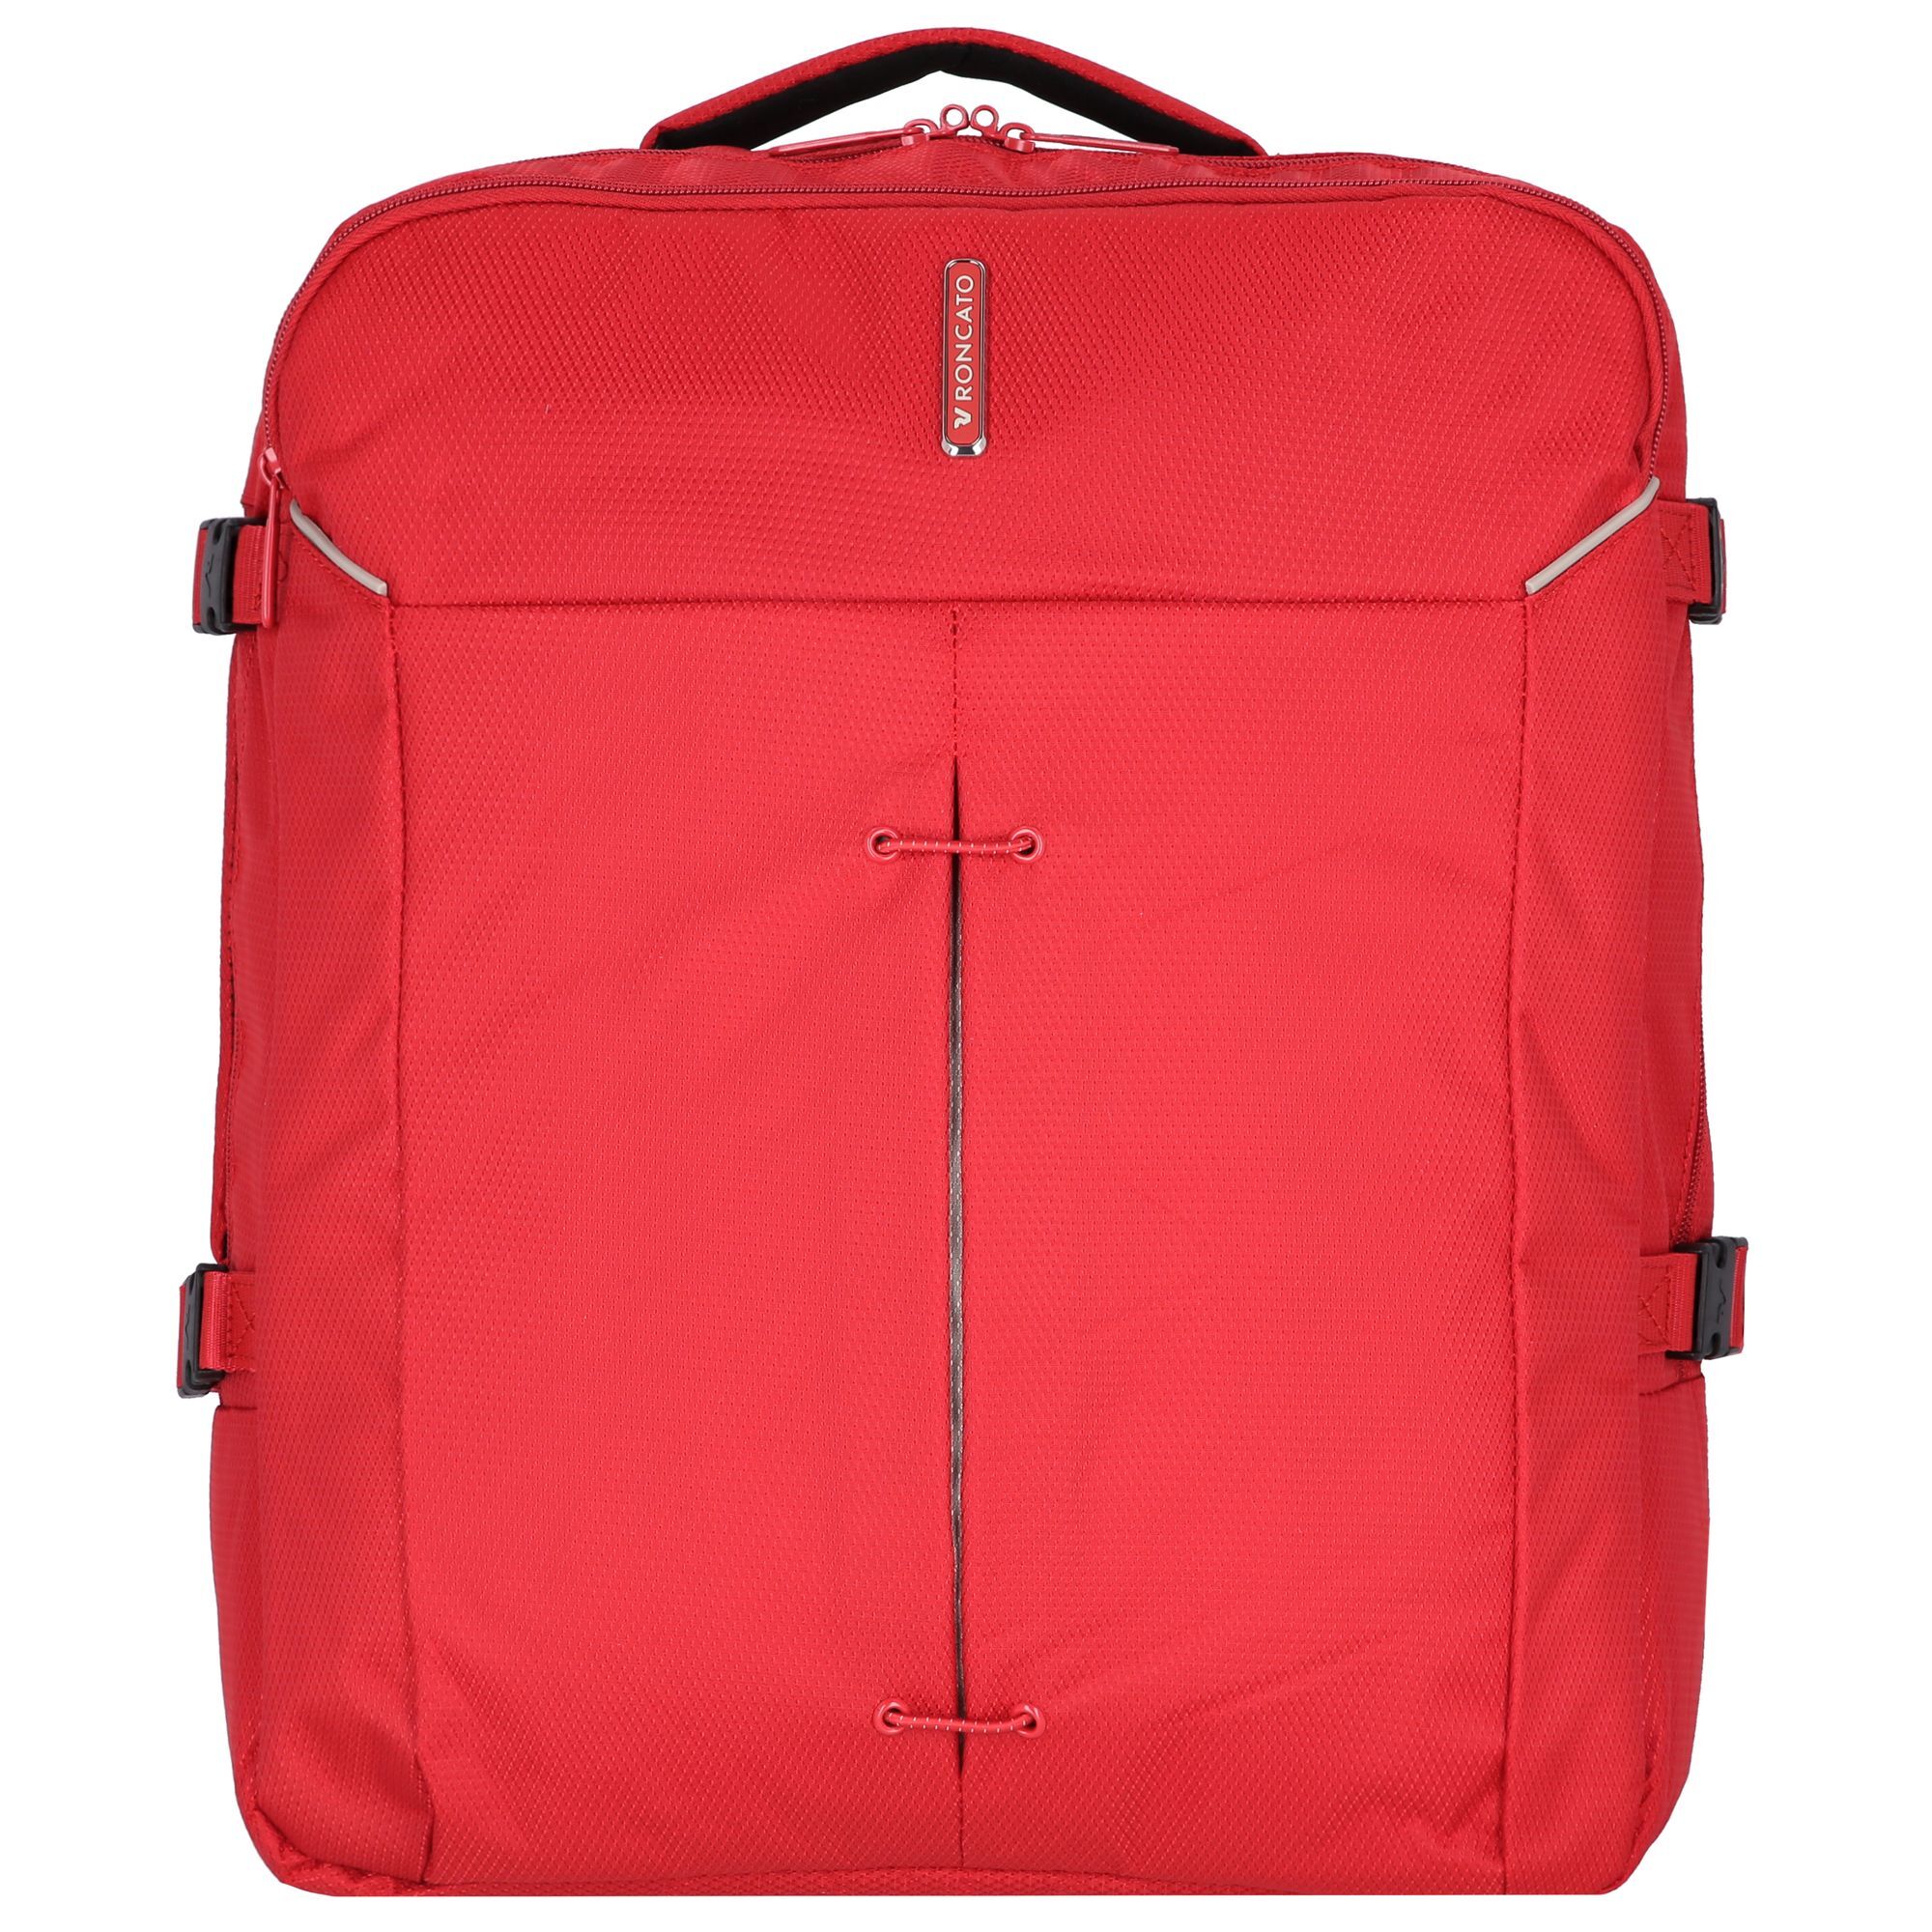 Рюкзак Roncato Ironik 2.0 45 cm Laptopfach, цвет rosso